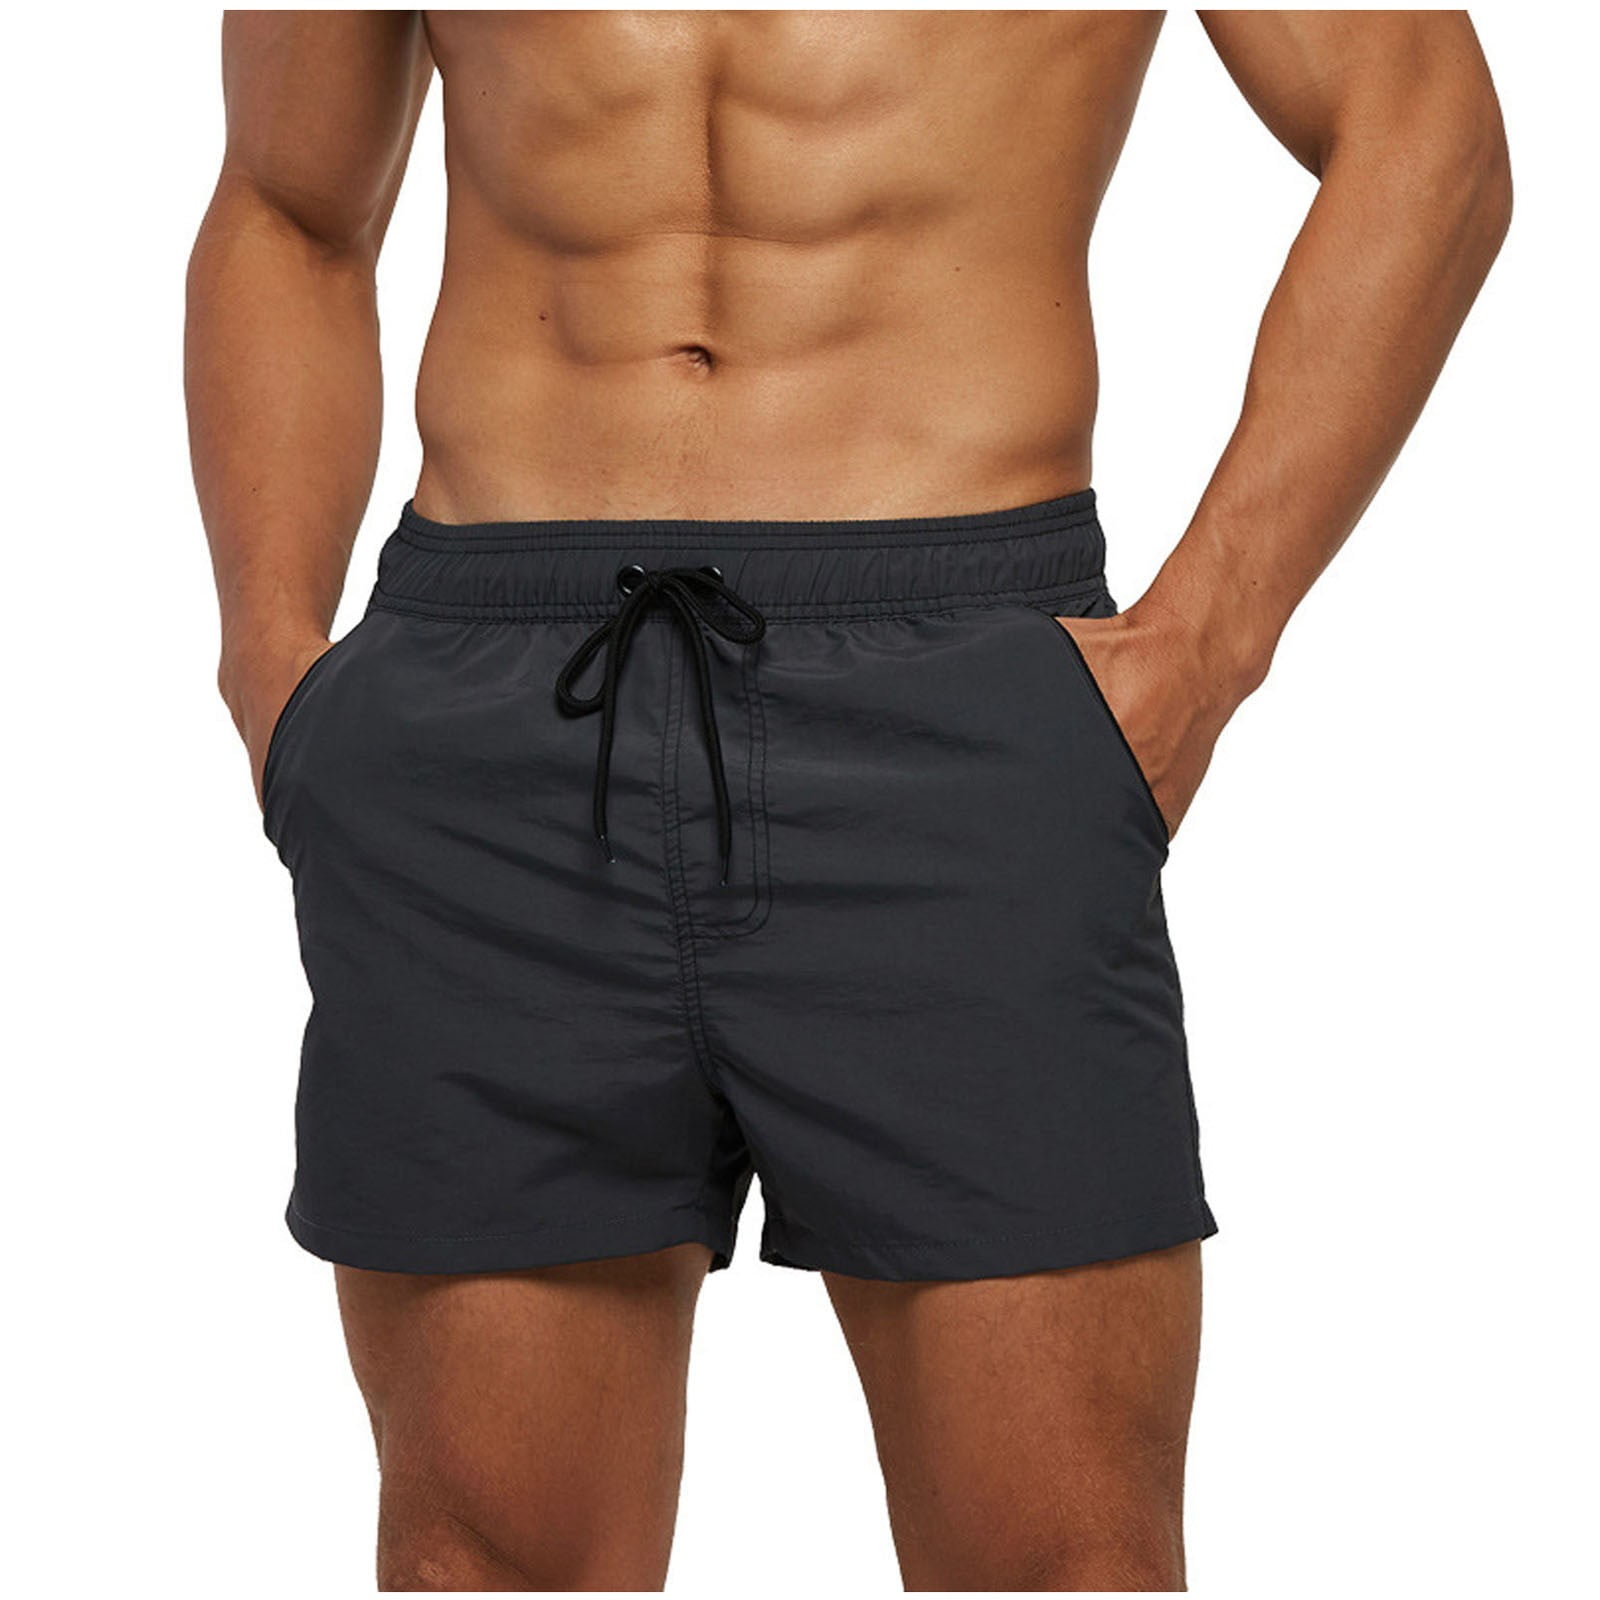 Floenr Mens Swimming Trunks,Men's Slim Swim Shorts with Zipper Pockets ...